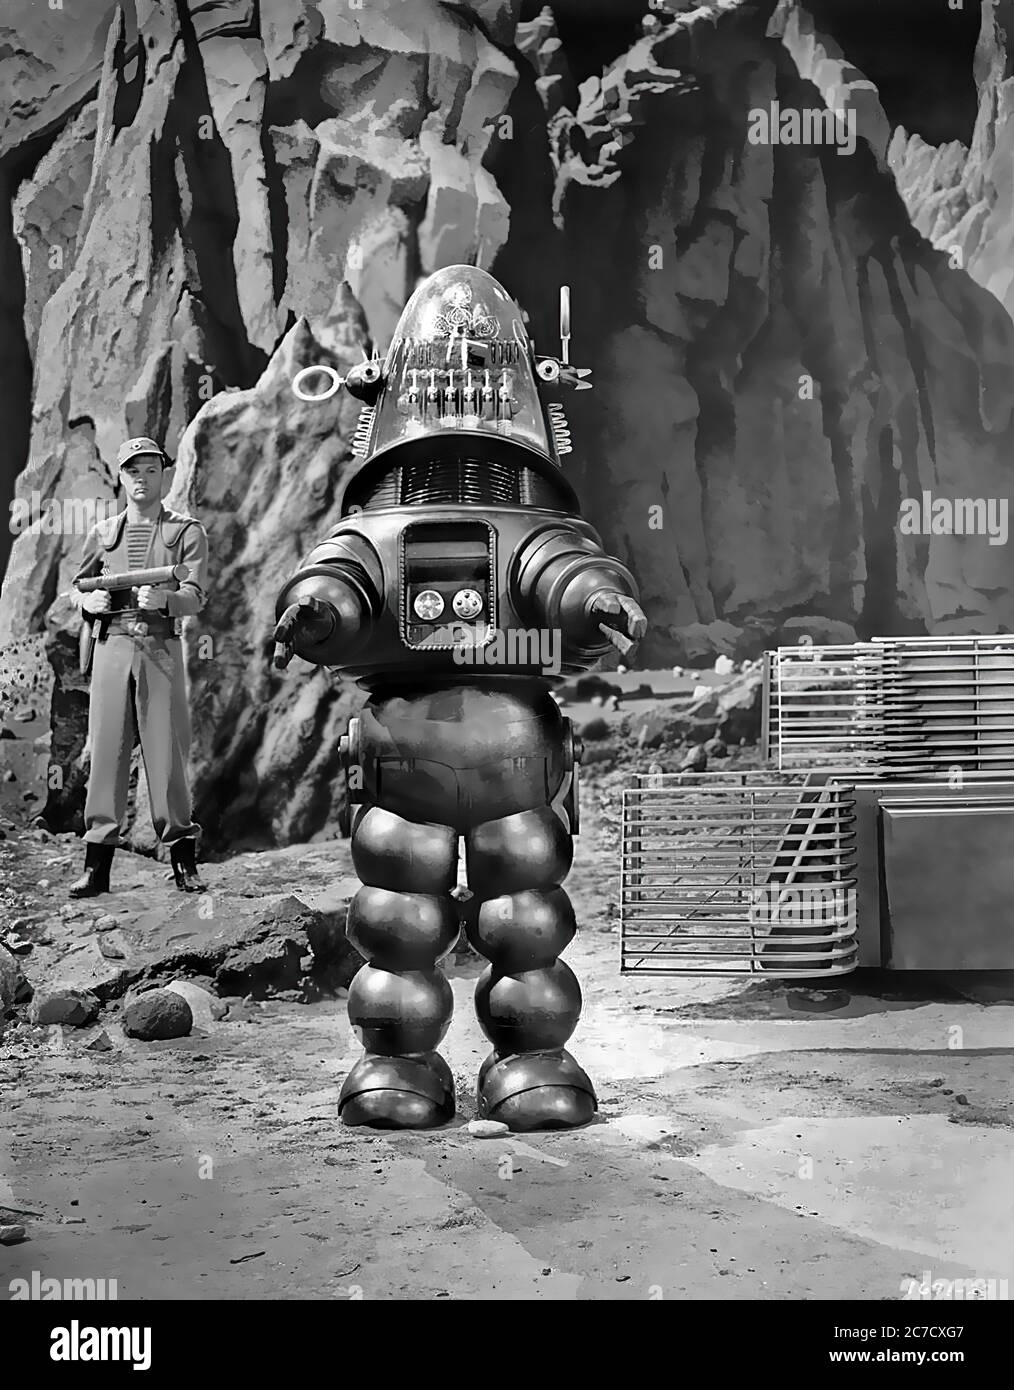 Roby il robot nel pianeta Proibita - immagine del film promozionale Foto  stock - Alamy